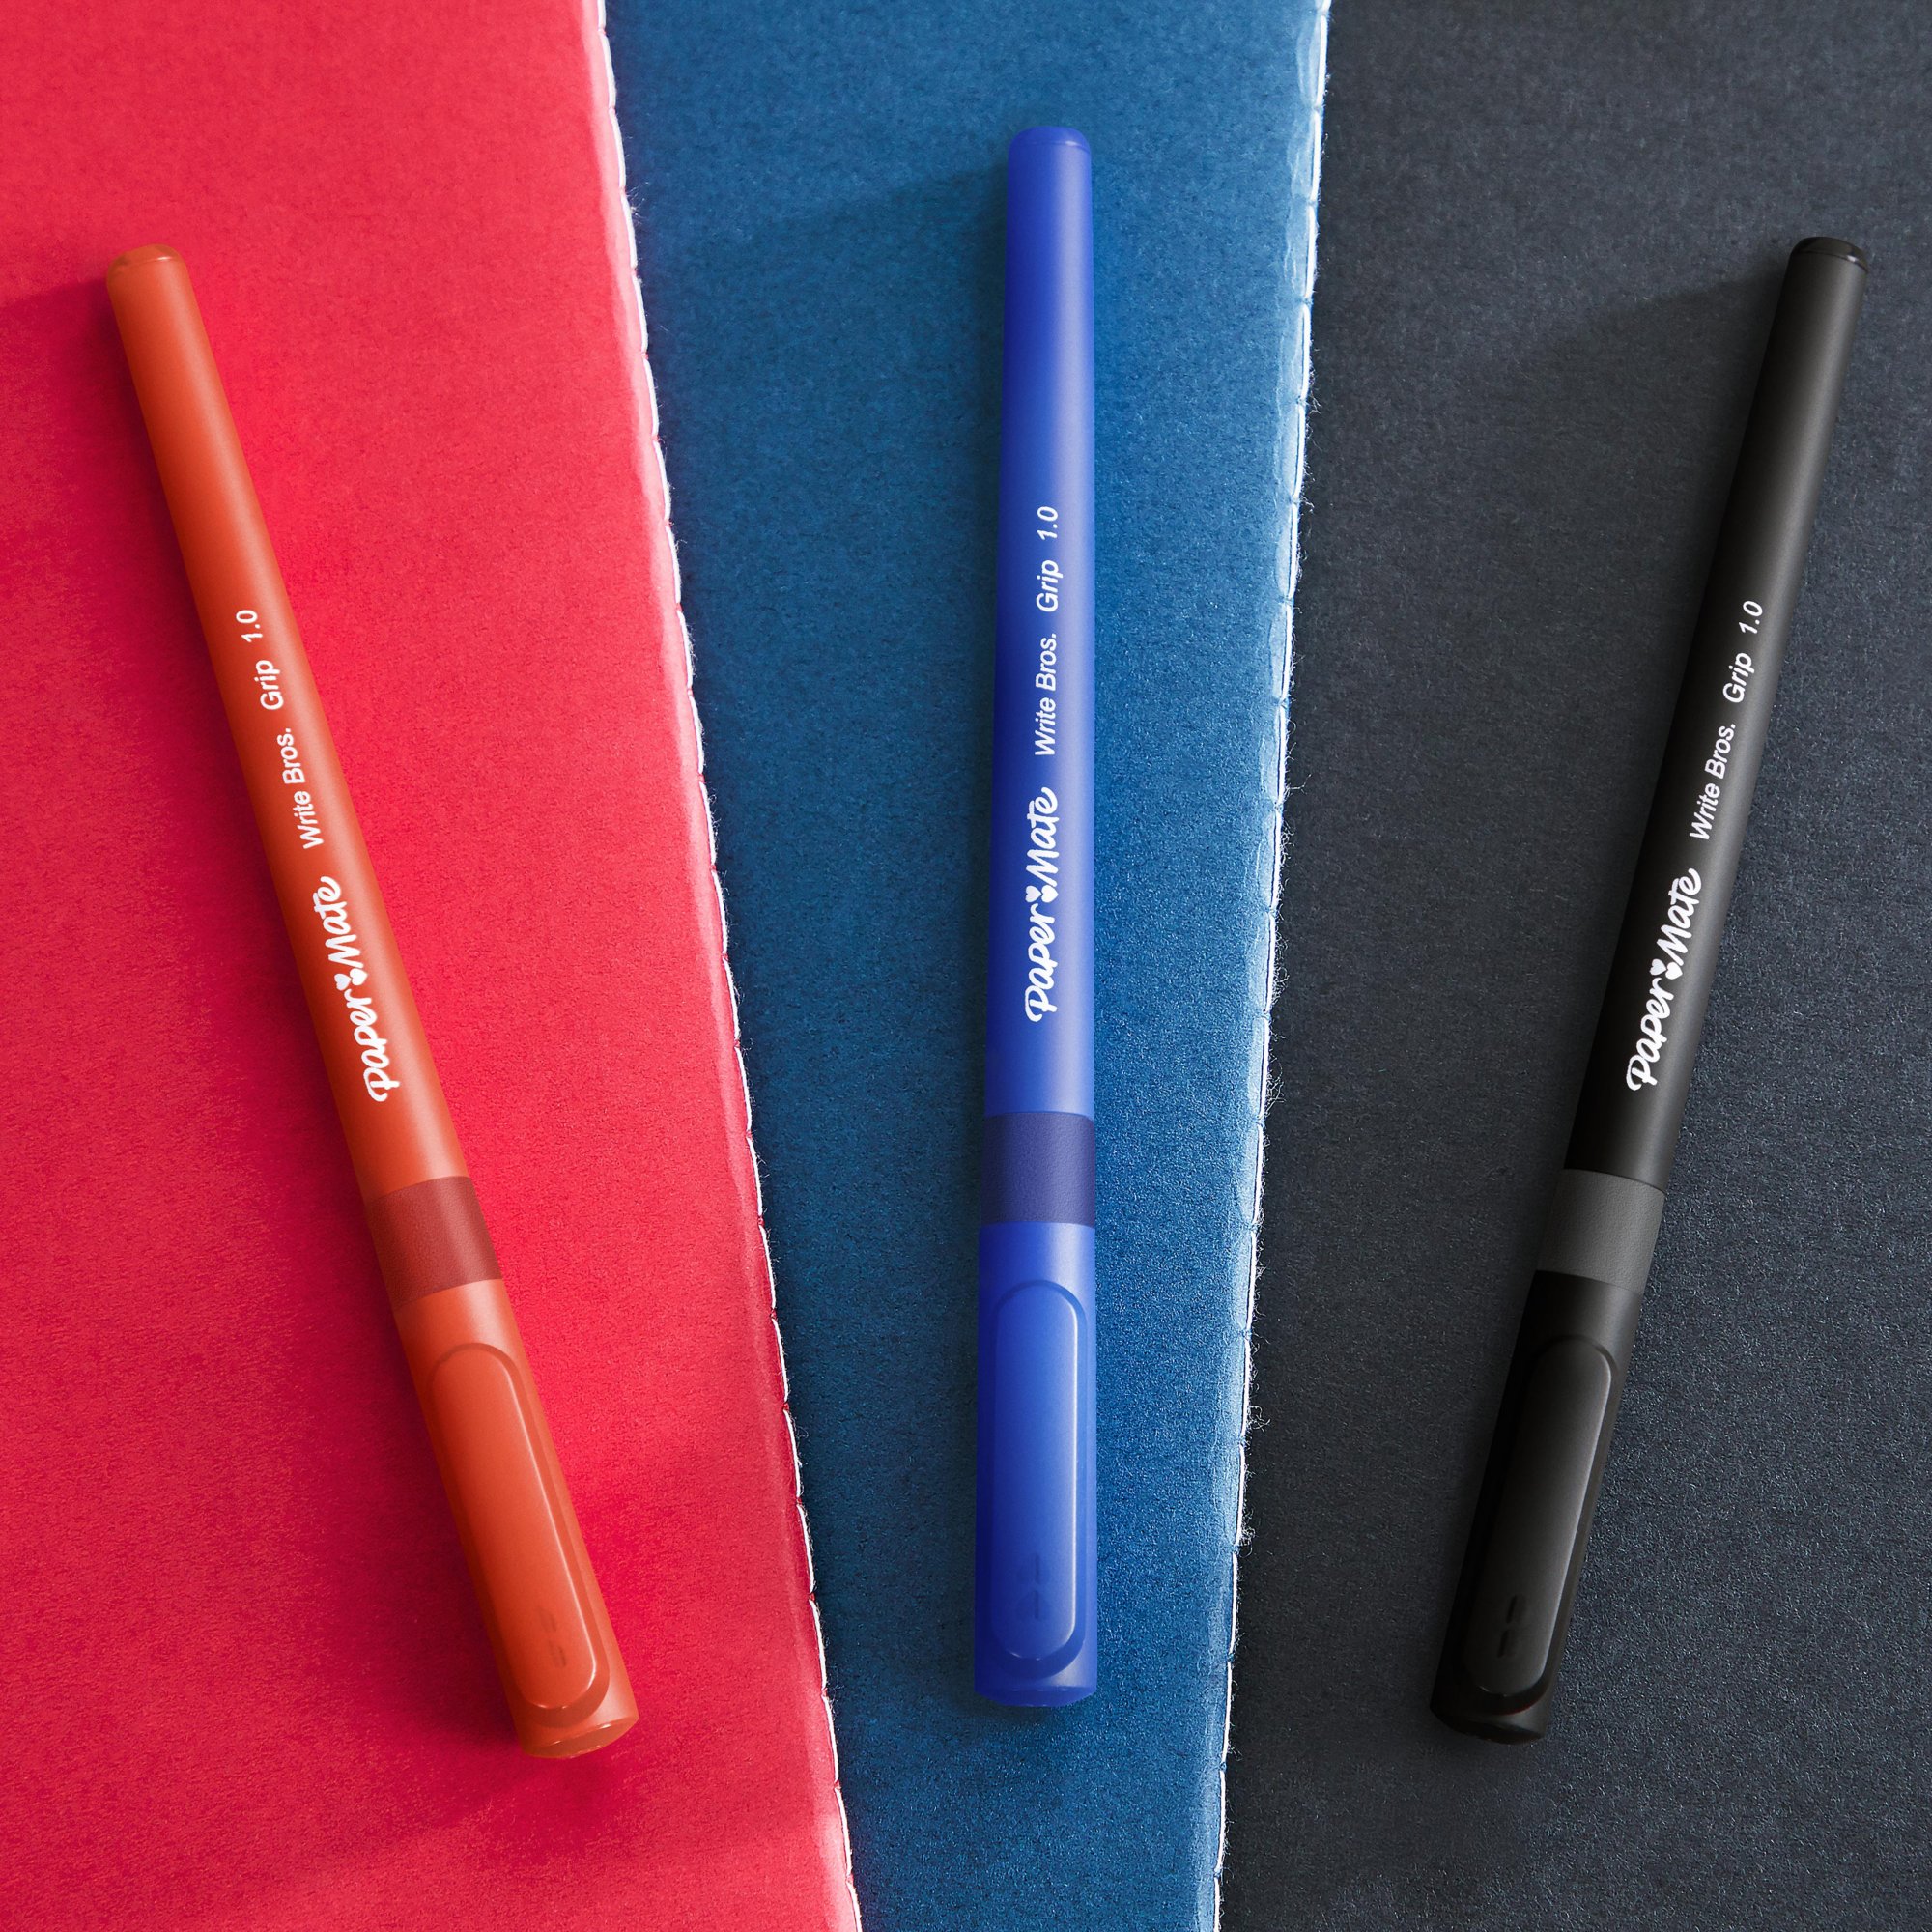 Paper Mate Element Pens - Color Grips